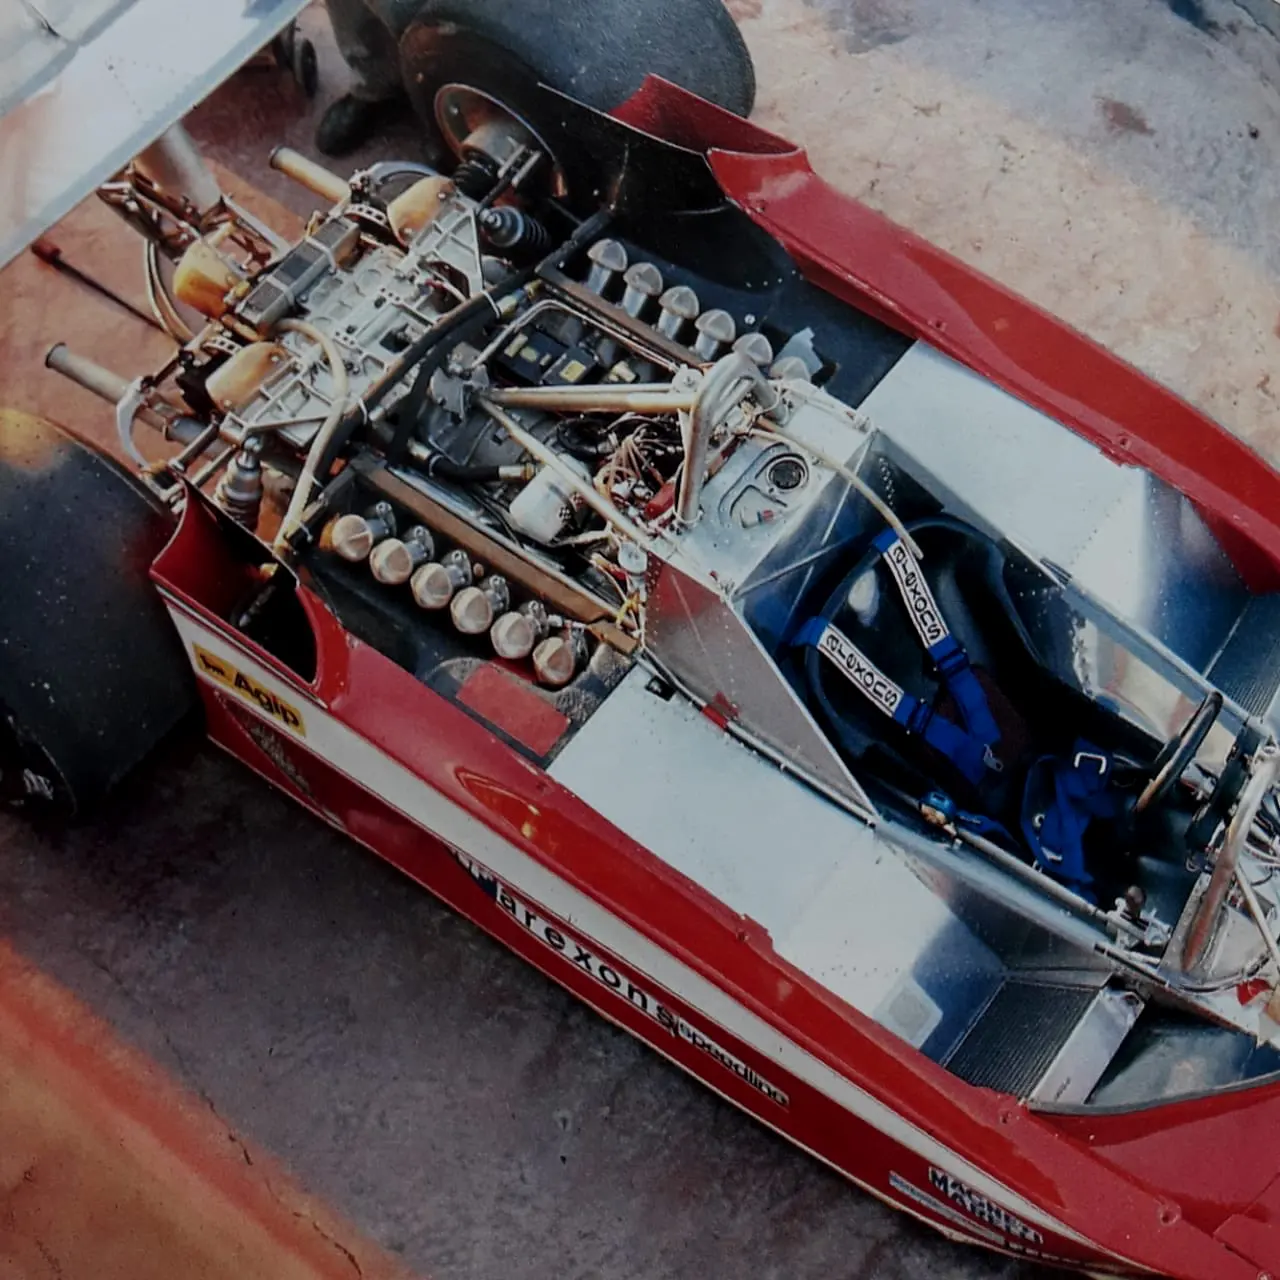 然而H12引擎的体积问题导致法拉利无法顺应时代设计出一款能与其搭配产生足够地面效应的车体。最终造成法拉利车队在1980赛季排名为倒数第二。